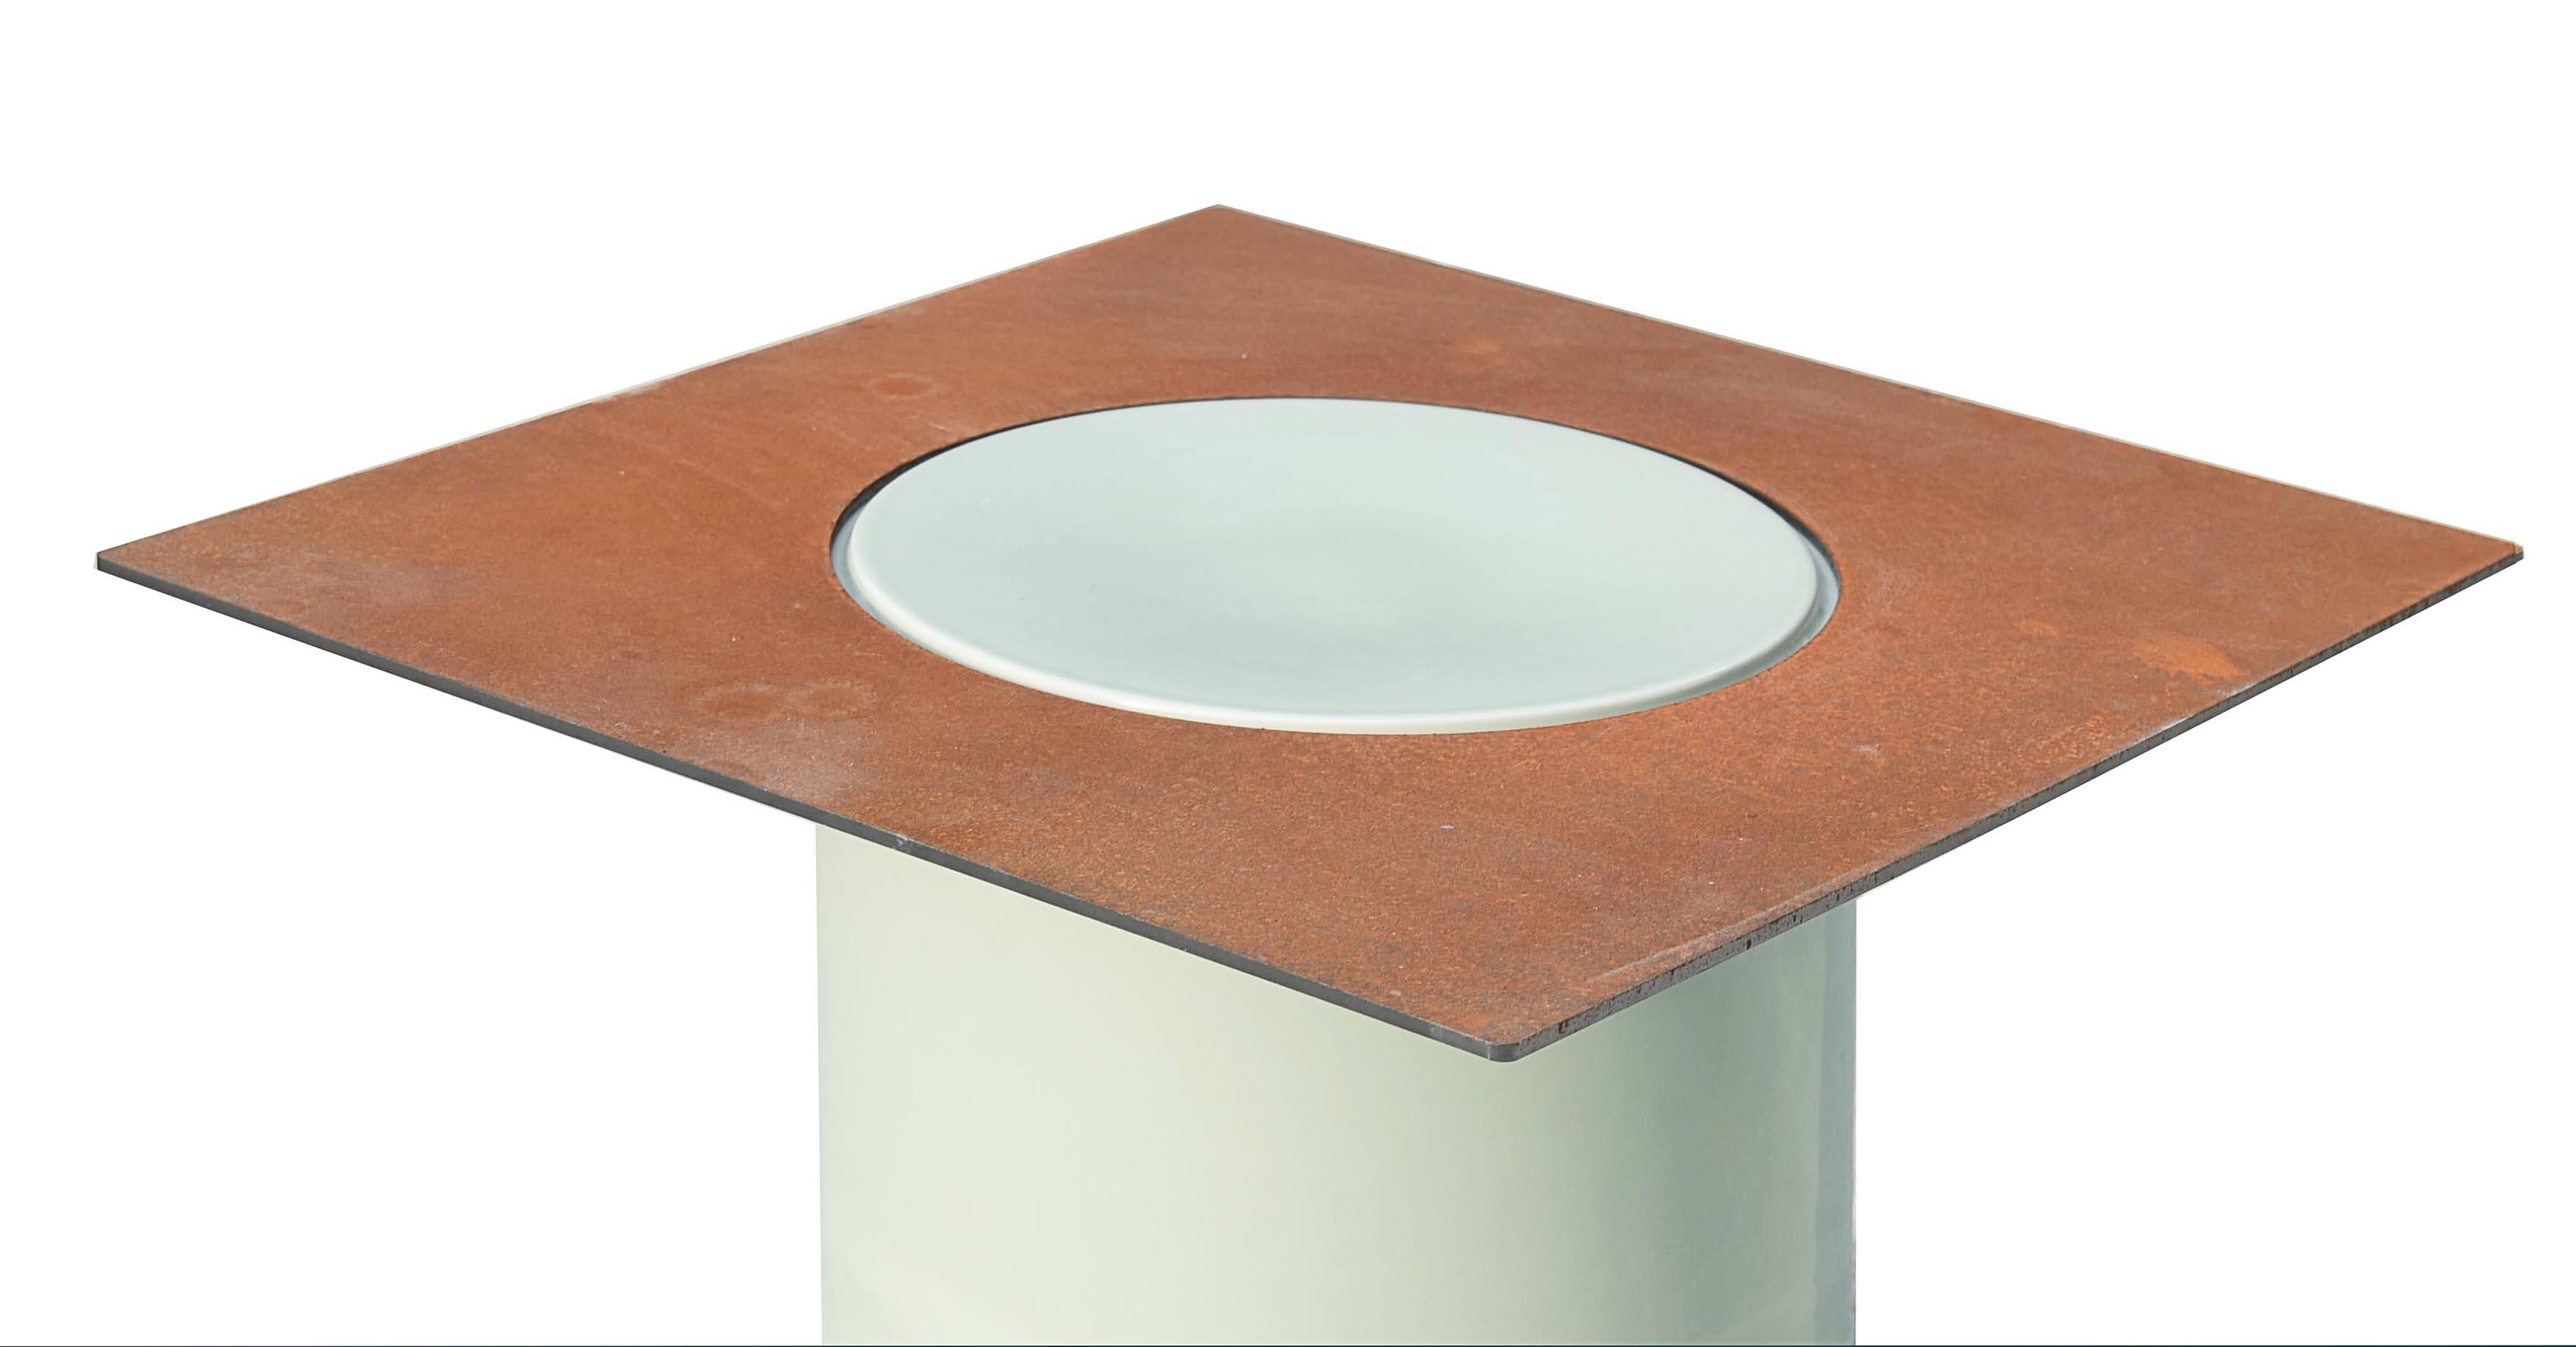 Les cylindres en porcelaine et les plaques en acier corten constituent les éléments de base de cette série, avec lesquels il est possible de créer des étagères, des tables d'appoint, des tables basses et des tabourets. Les pièces en porcelaine sont